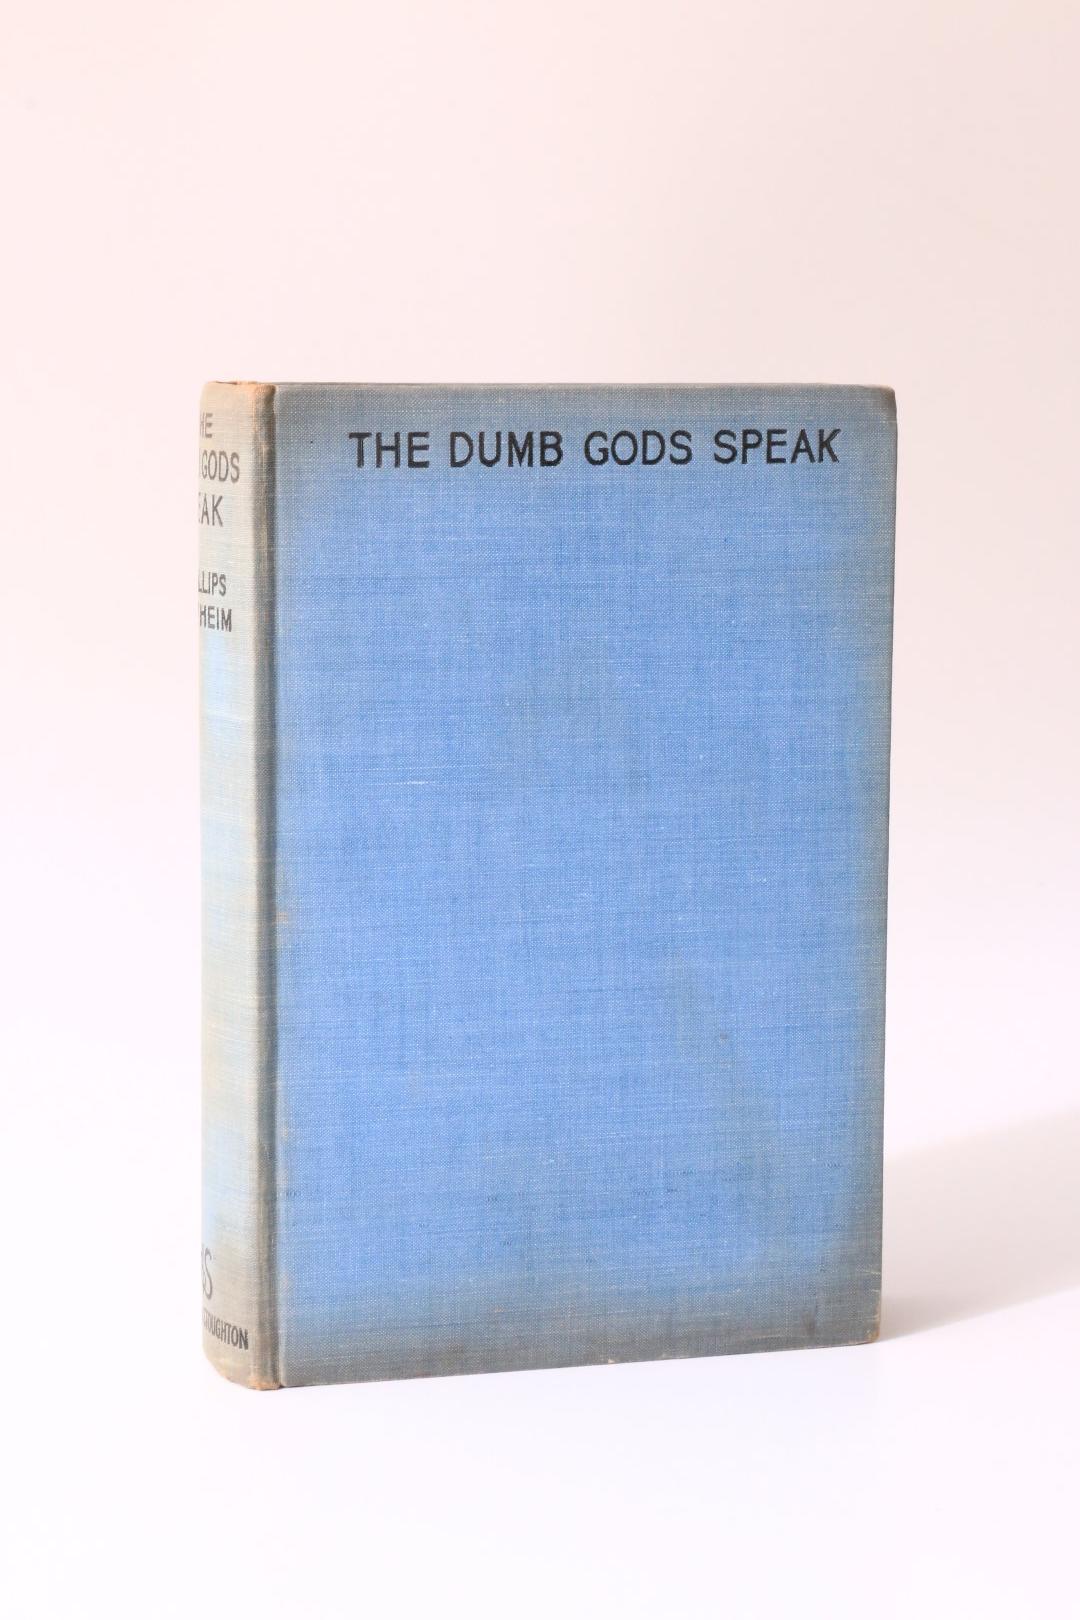 E. Phillips Oppenheim - The Dumb Gods Speak - Hodder & Stoughton, 1937, First Edition.